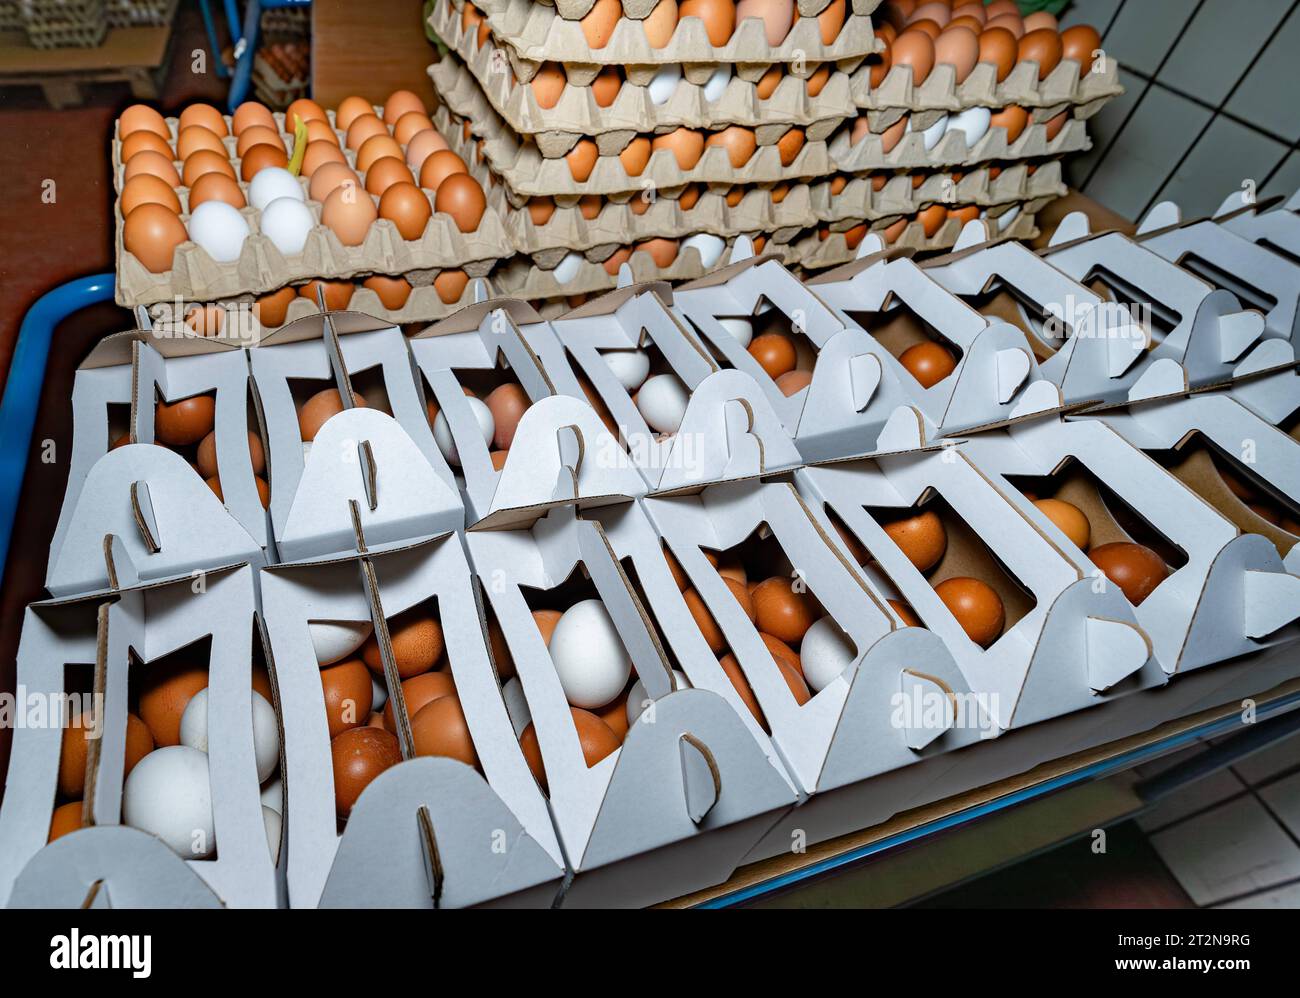 Erzeugung von Hühnereiern, gekühlter Lagerraum mit vielen gestapelten Eierkartons - Symbolfoto. Besuch bei einem Direktvermarkter von frischen Hühnereiern. Die Hühner werden teilweise in einem Hühnermobil aber auch in einem großräumig umgebauten Freilandstall gehalten und haben tagsüber viel Auslauf auf umliegenden Weideflächen. Einblick gibt es auch in den mobilen Hühnerstall und der Verpackung der frisch gelegten Eier per Handarbeit. Raum Minden-Lübbecke NRW Deutschland *** Production of chicken eggs, refrigerated storage room with many stacked egg cartons symbol photo Visit to a direct mark Stock Photo